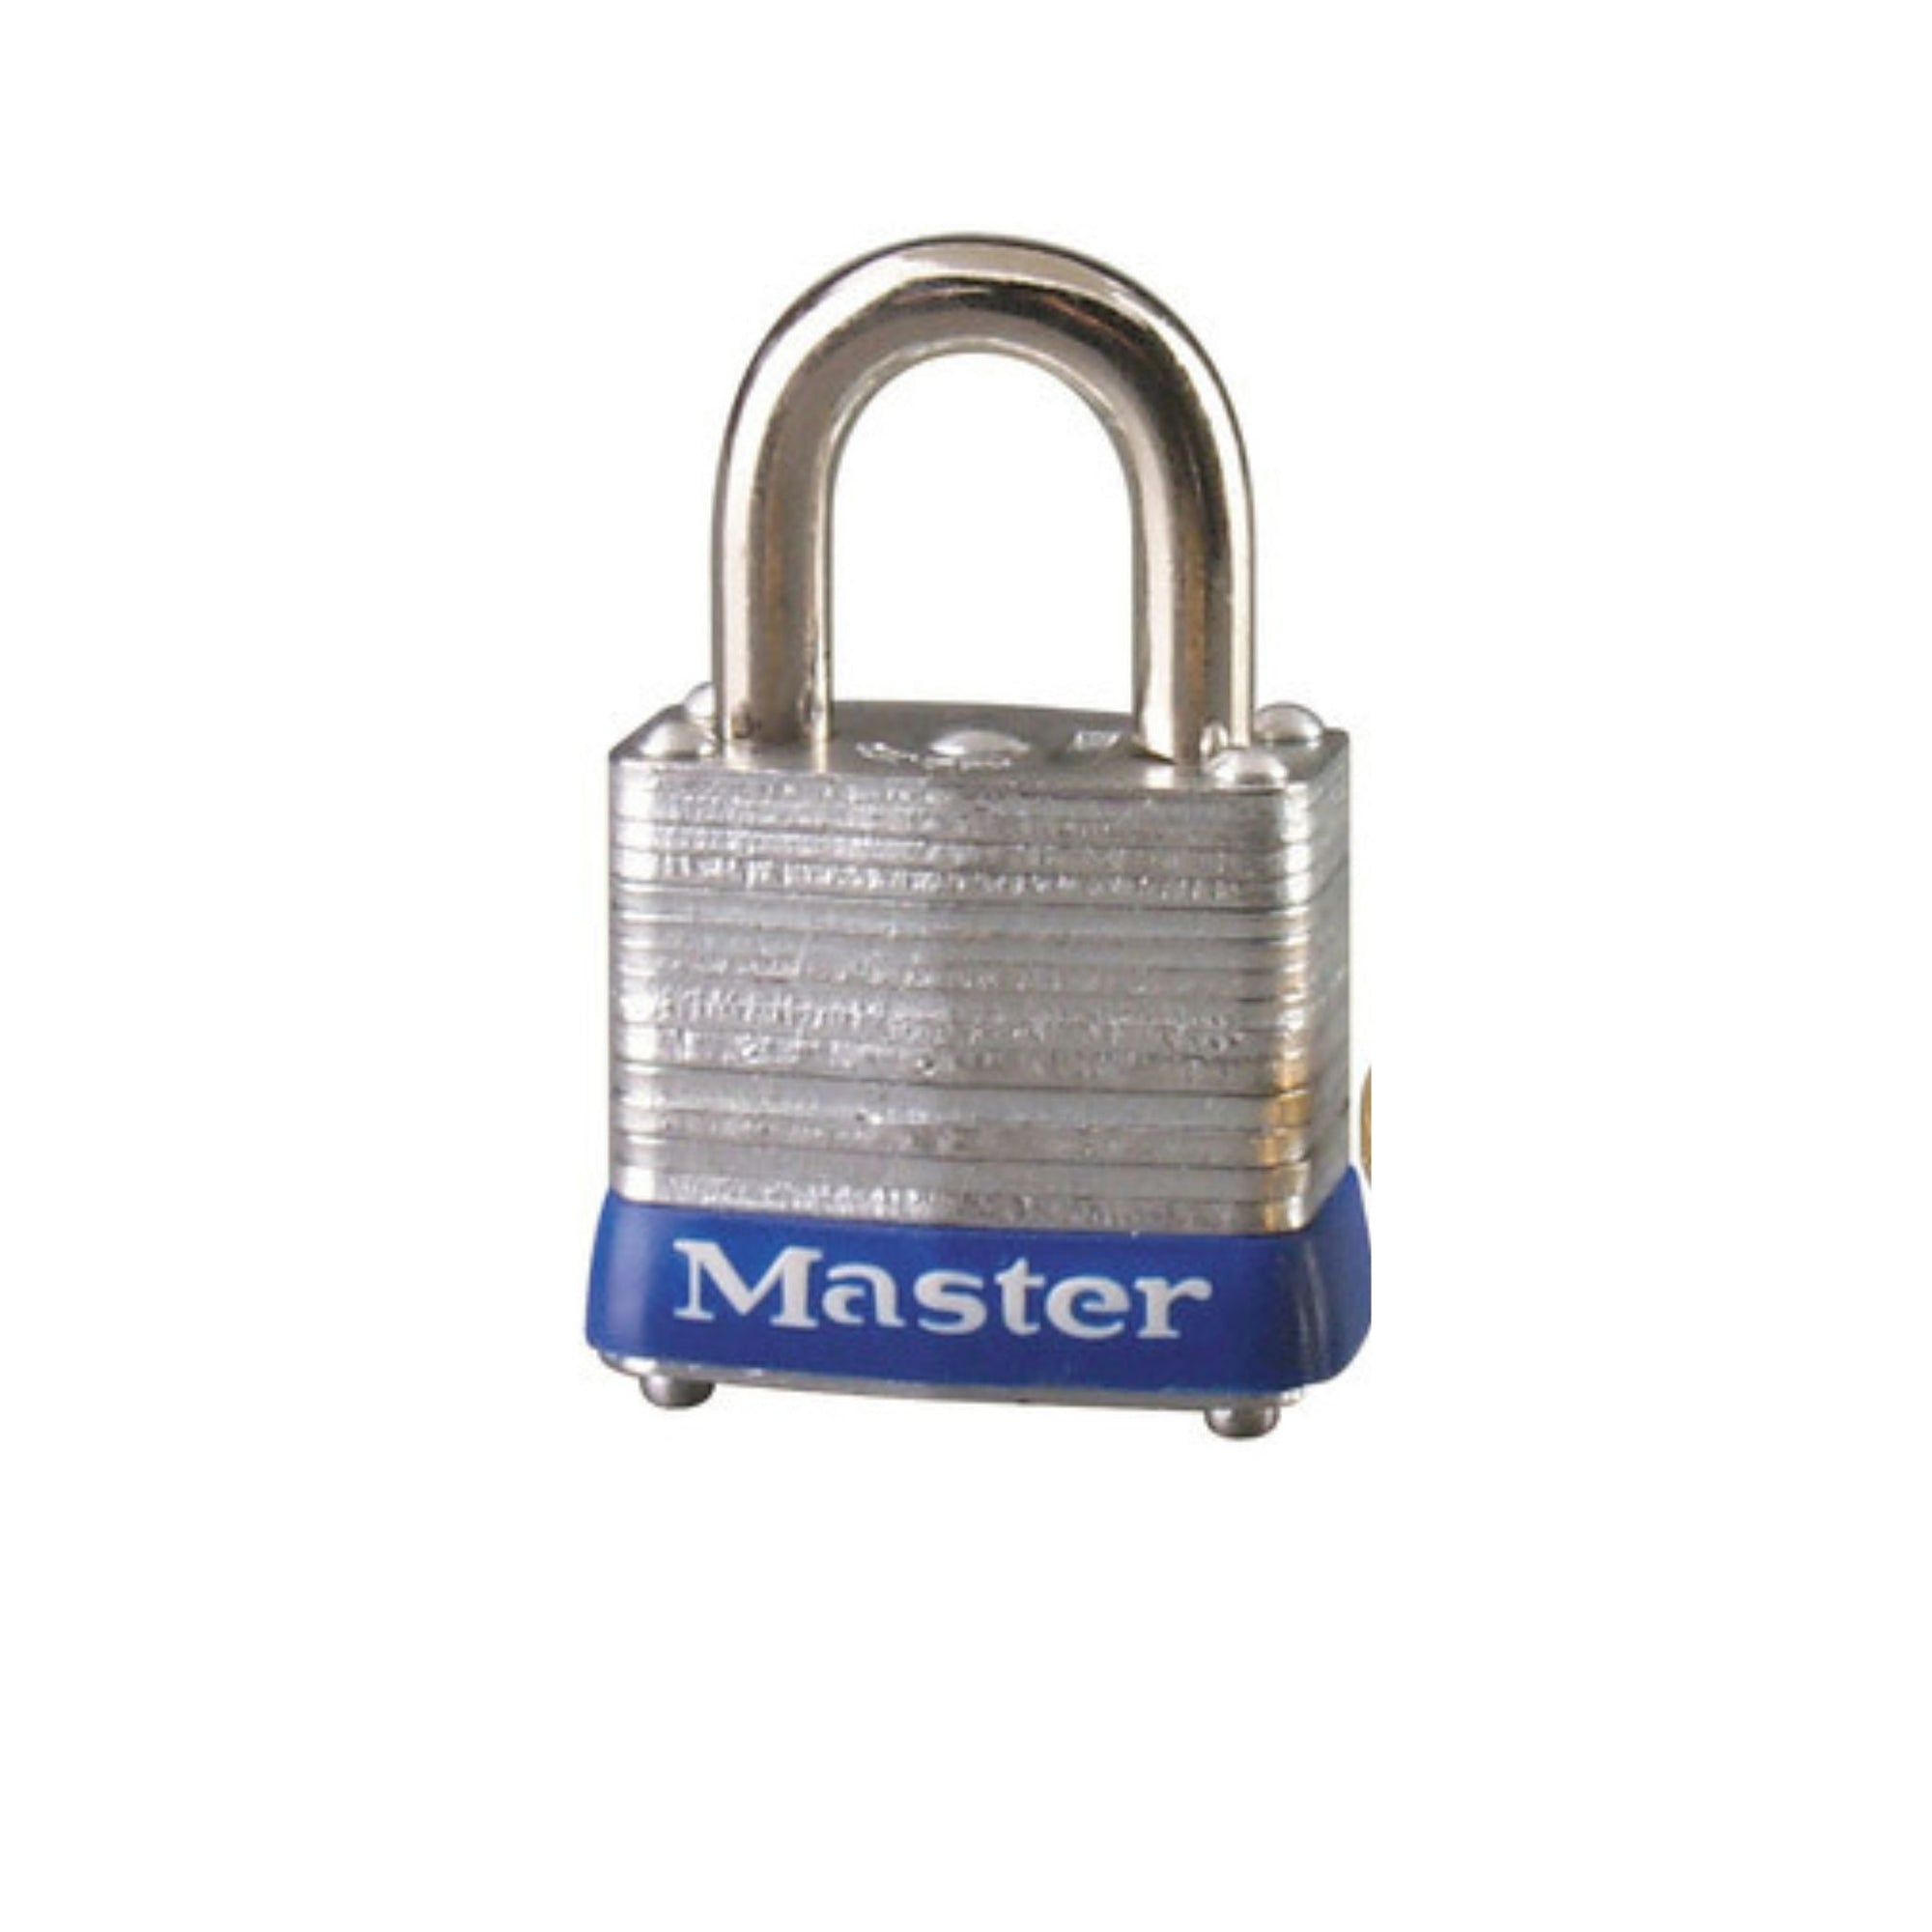 Master Lock 7KA P108 Lock Laminated steel No. 7 Series Padlock Keyed to Match Existing Key Number KAP108 - The Lock Source